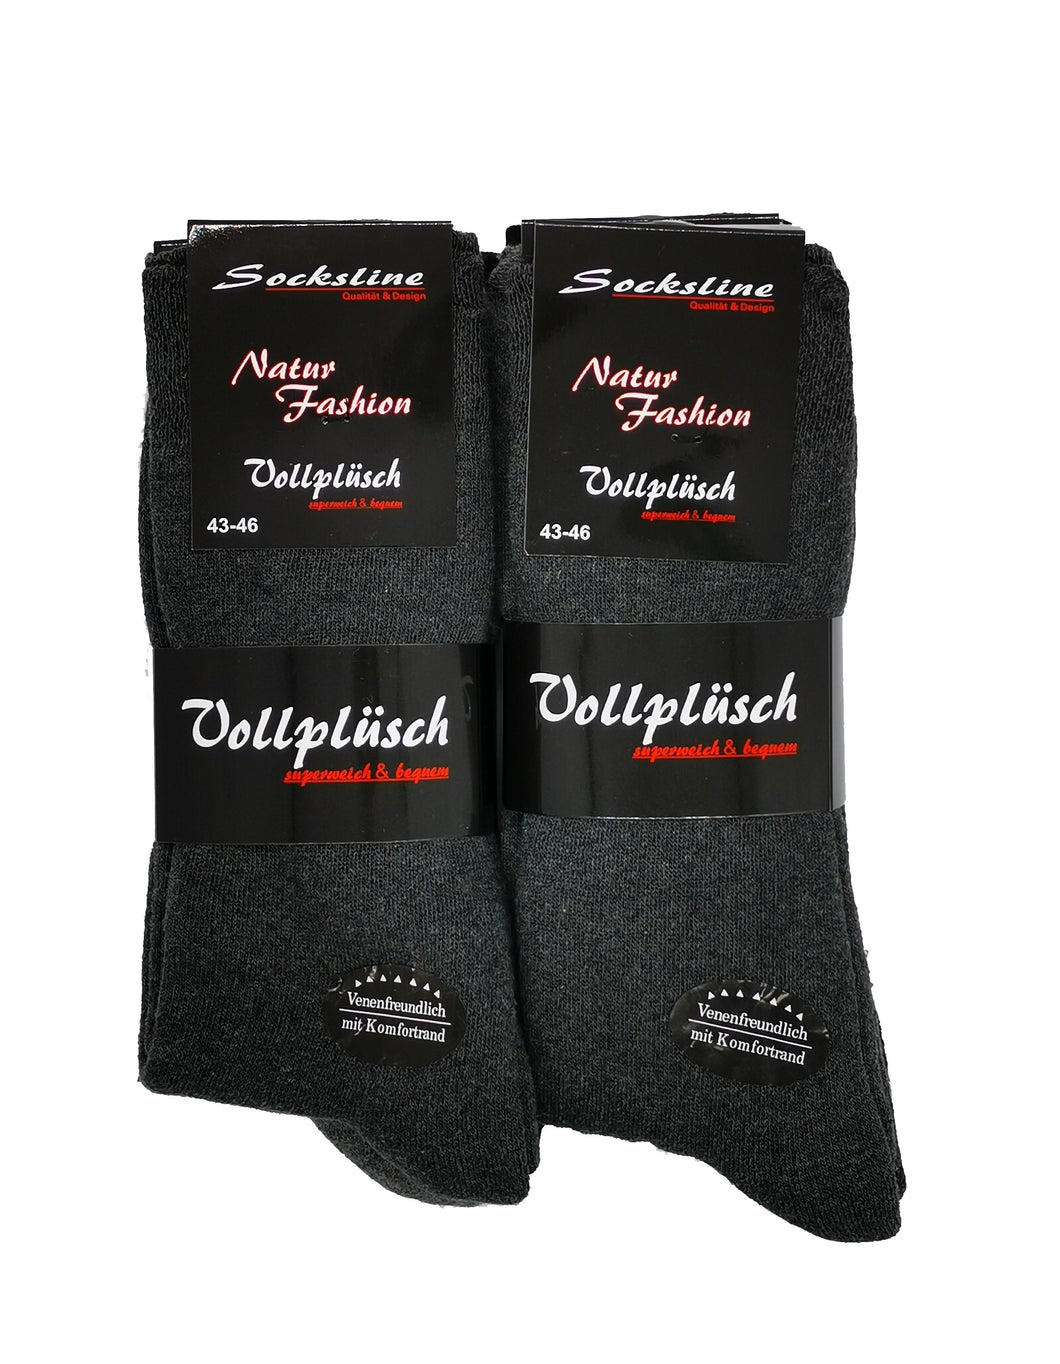 Vollplüsch Socken ohne Gummi und ohne Naht 85% Baumwolle 3 oder 6 Paar